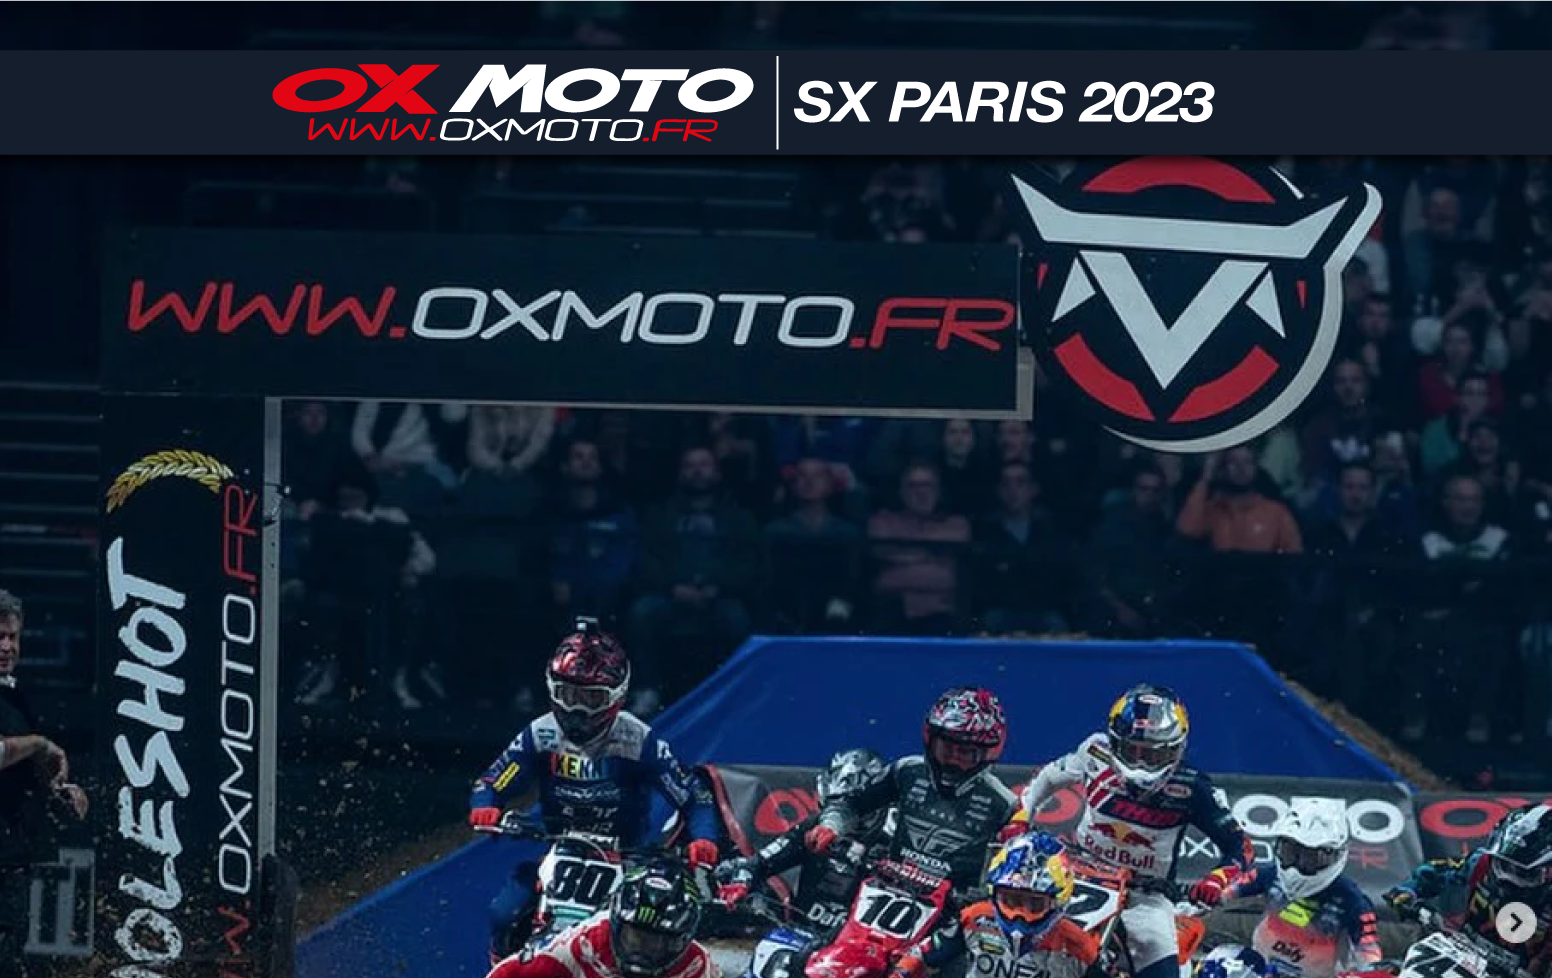 SX PARIS 23 - Oxmoto partenaire du Holeshot !  